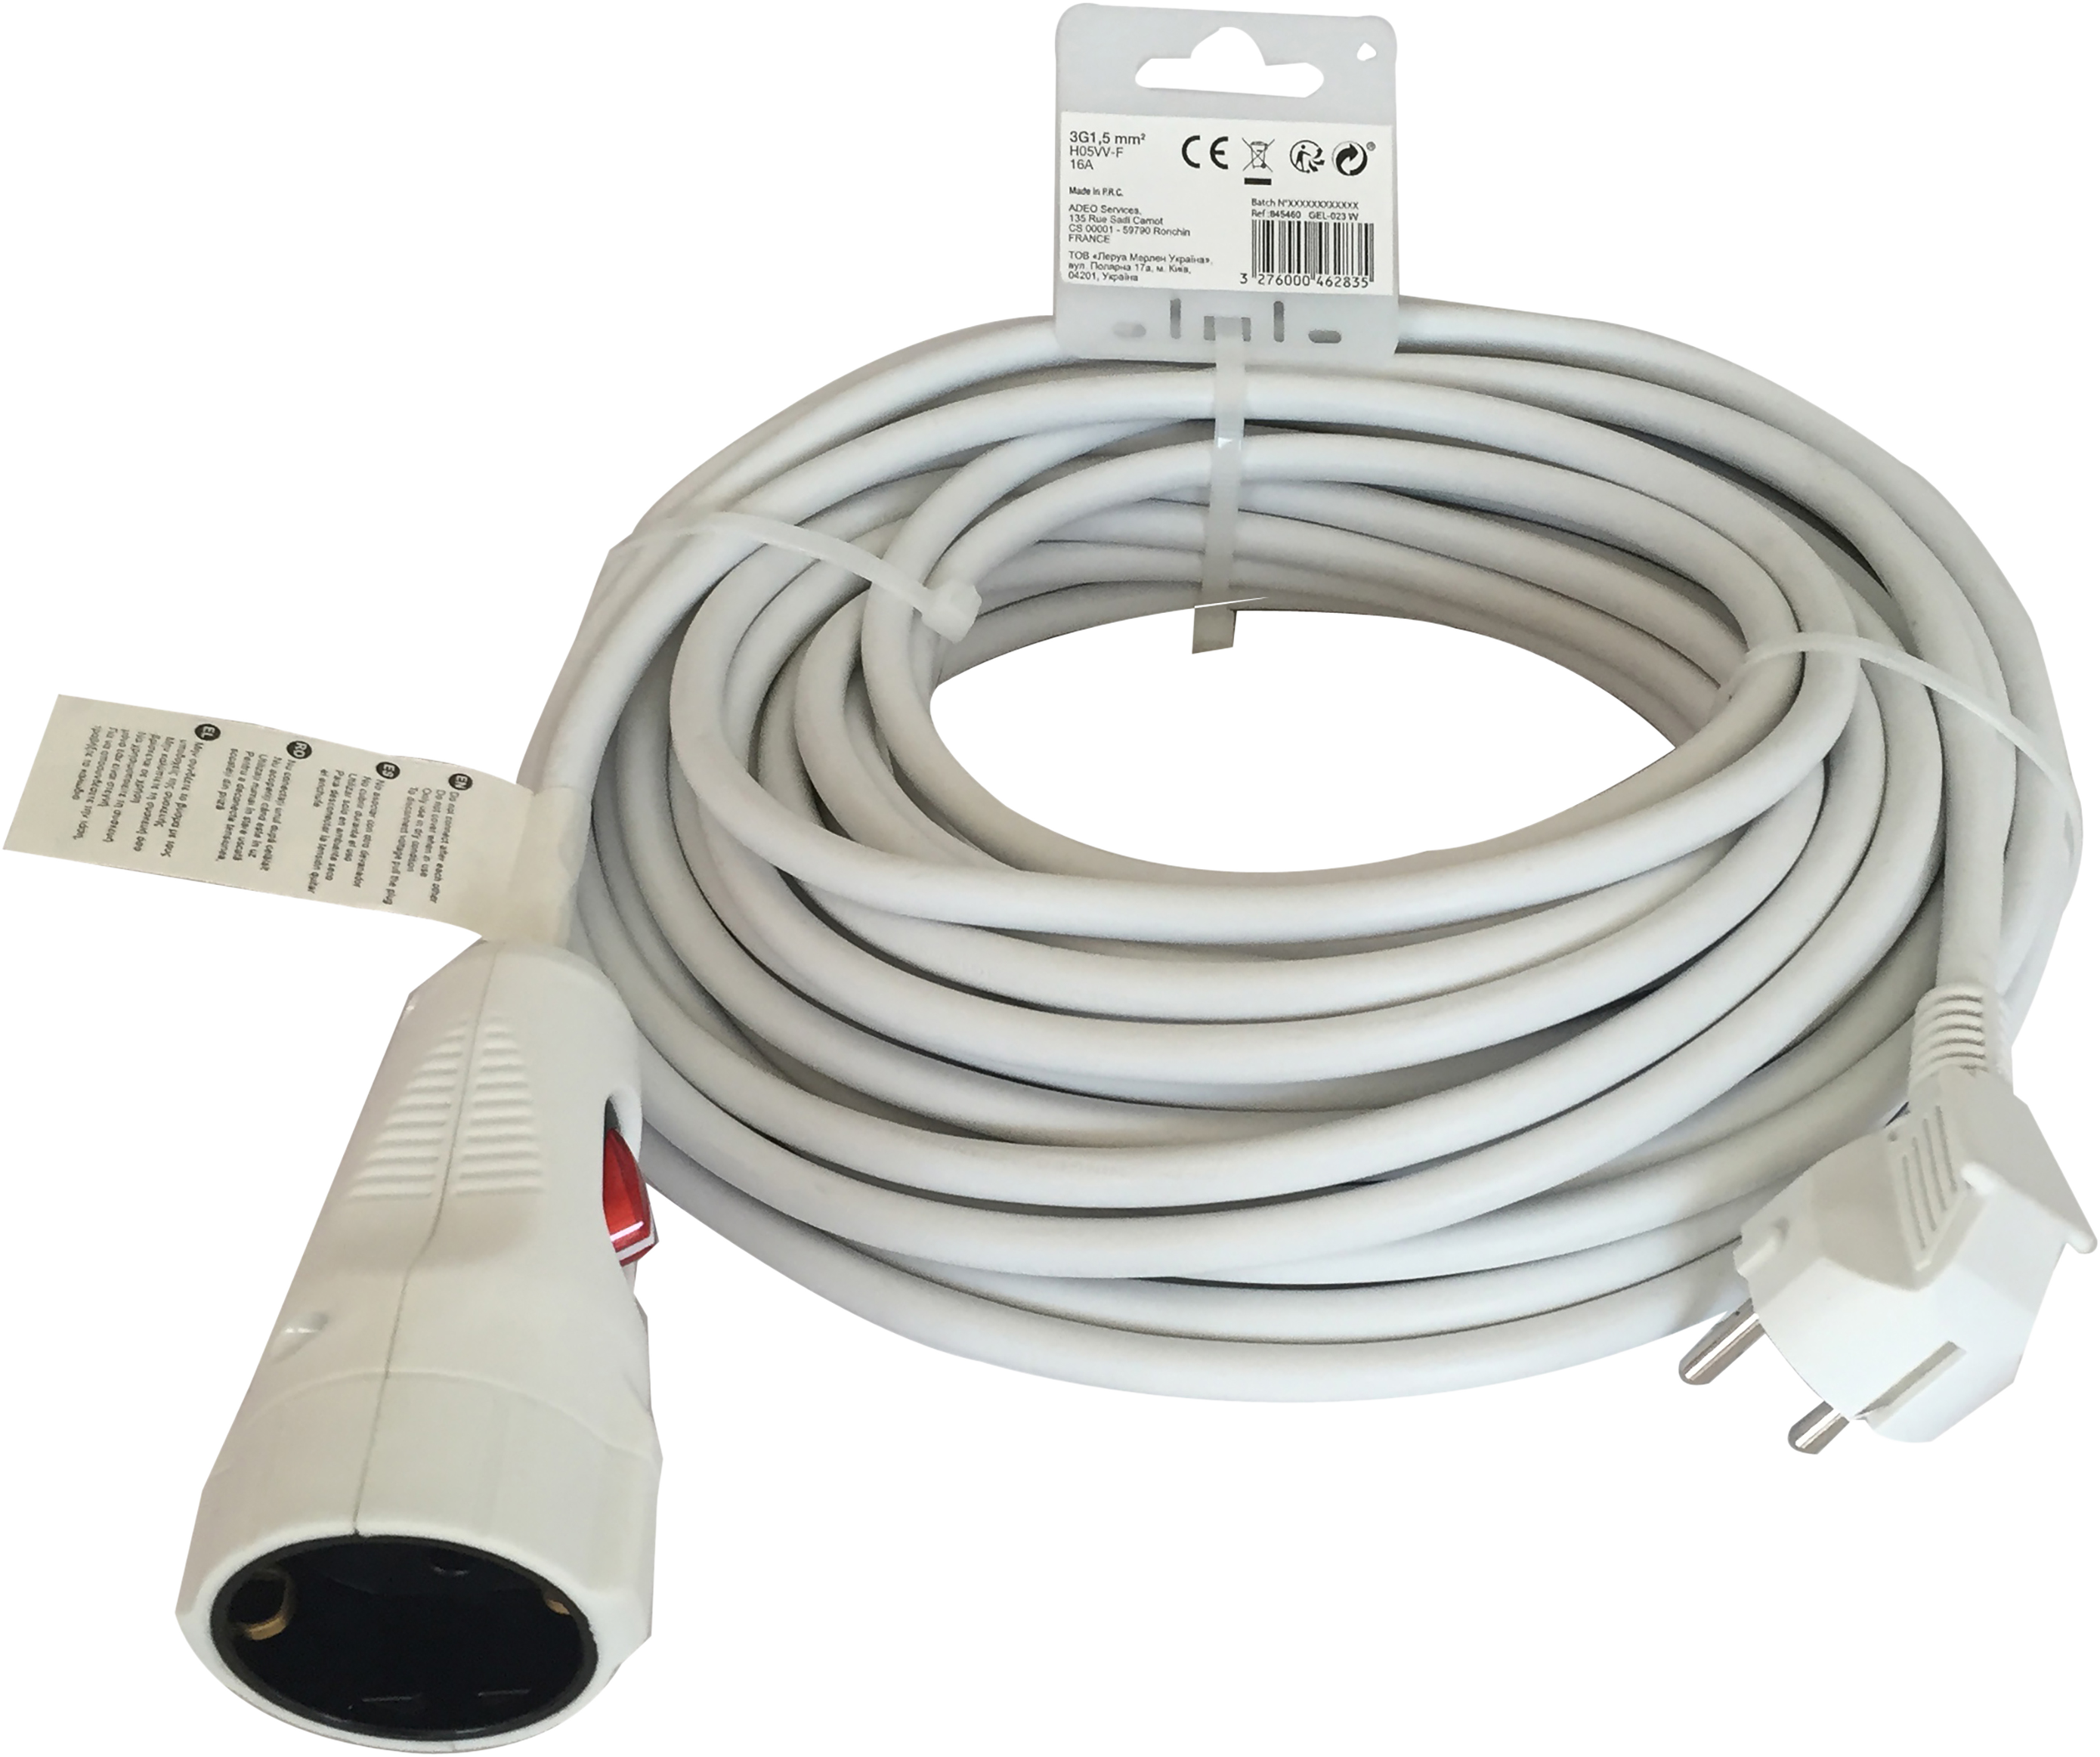 Prolongador de cable lexman blanco 3x1,5 mm² 20 m